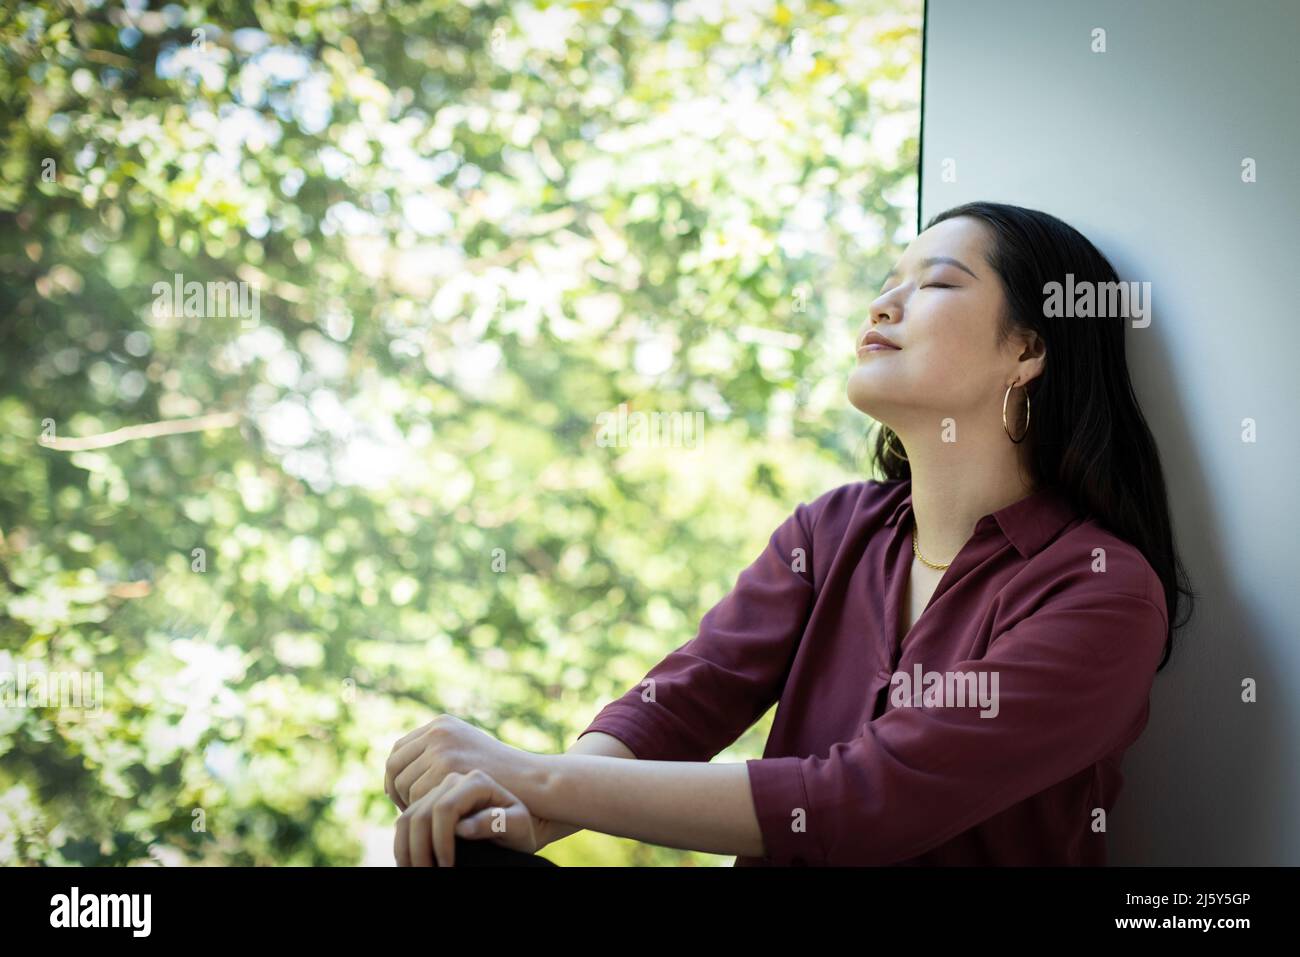 Una mujer joven y serena relajándose en la ventana con vista al árbol verde Foto de stock